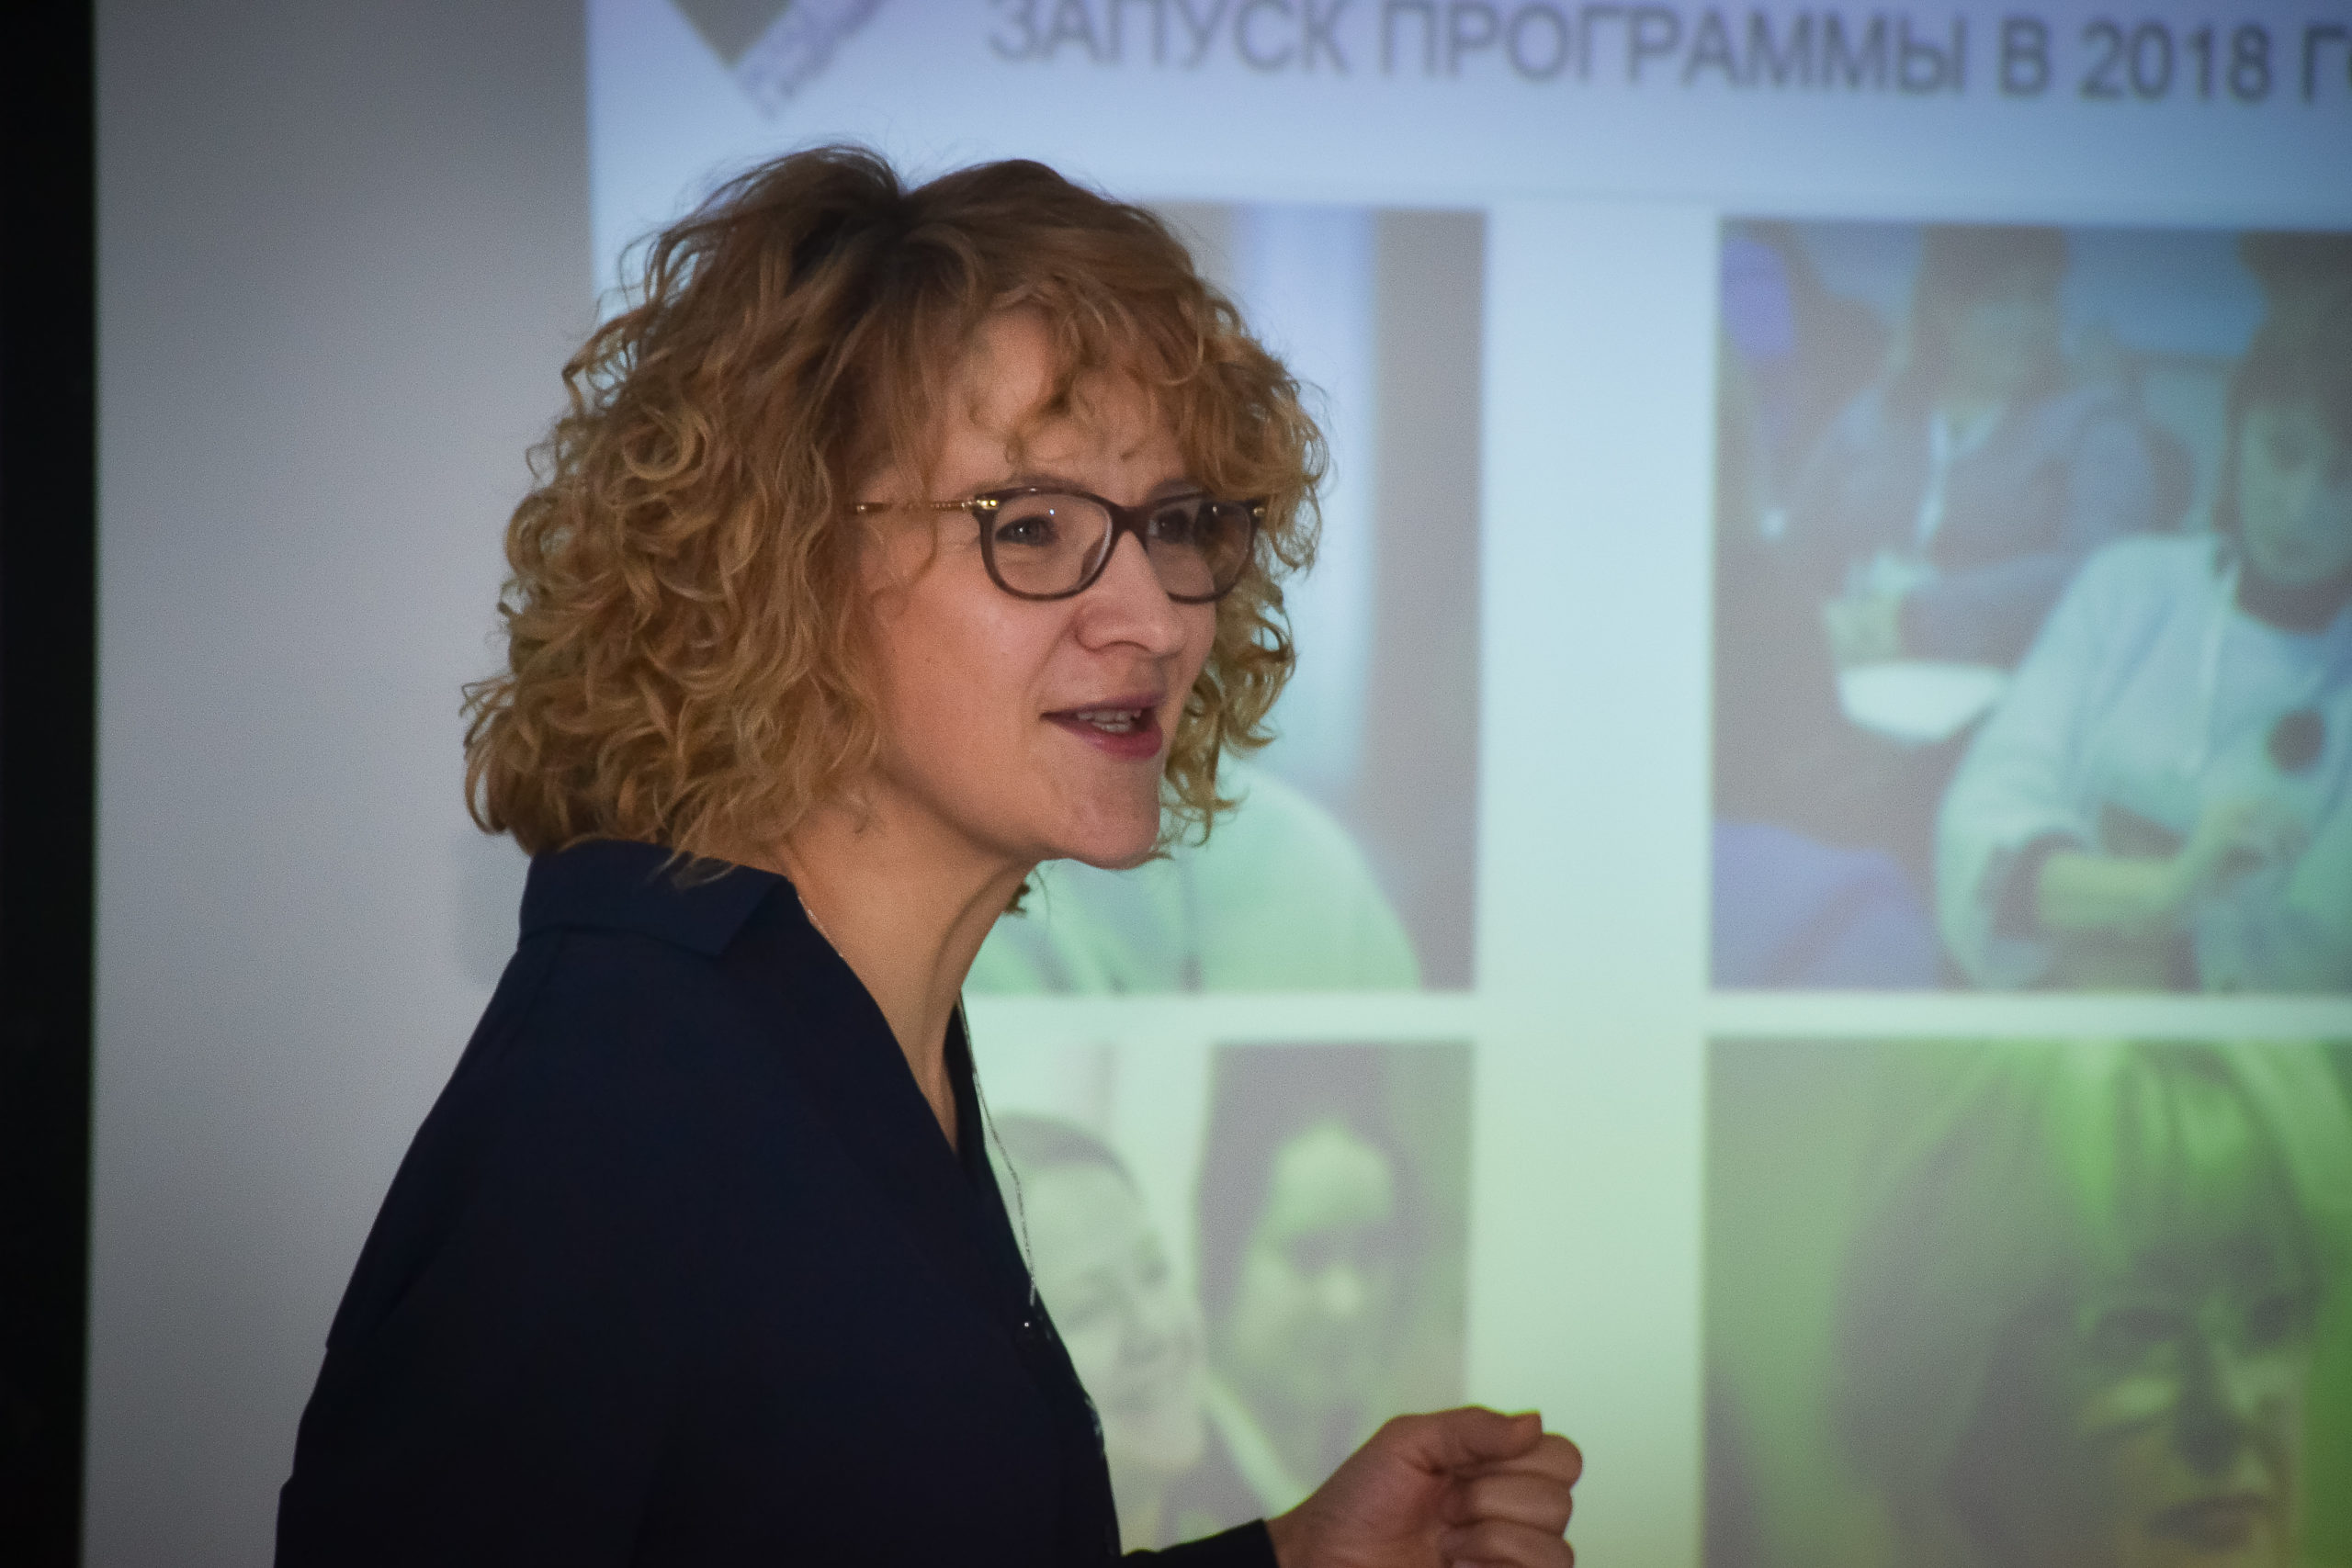 Ульяновск: старт Программы по развитию личностного потенциала